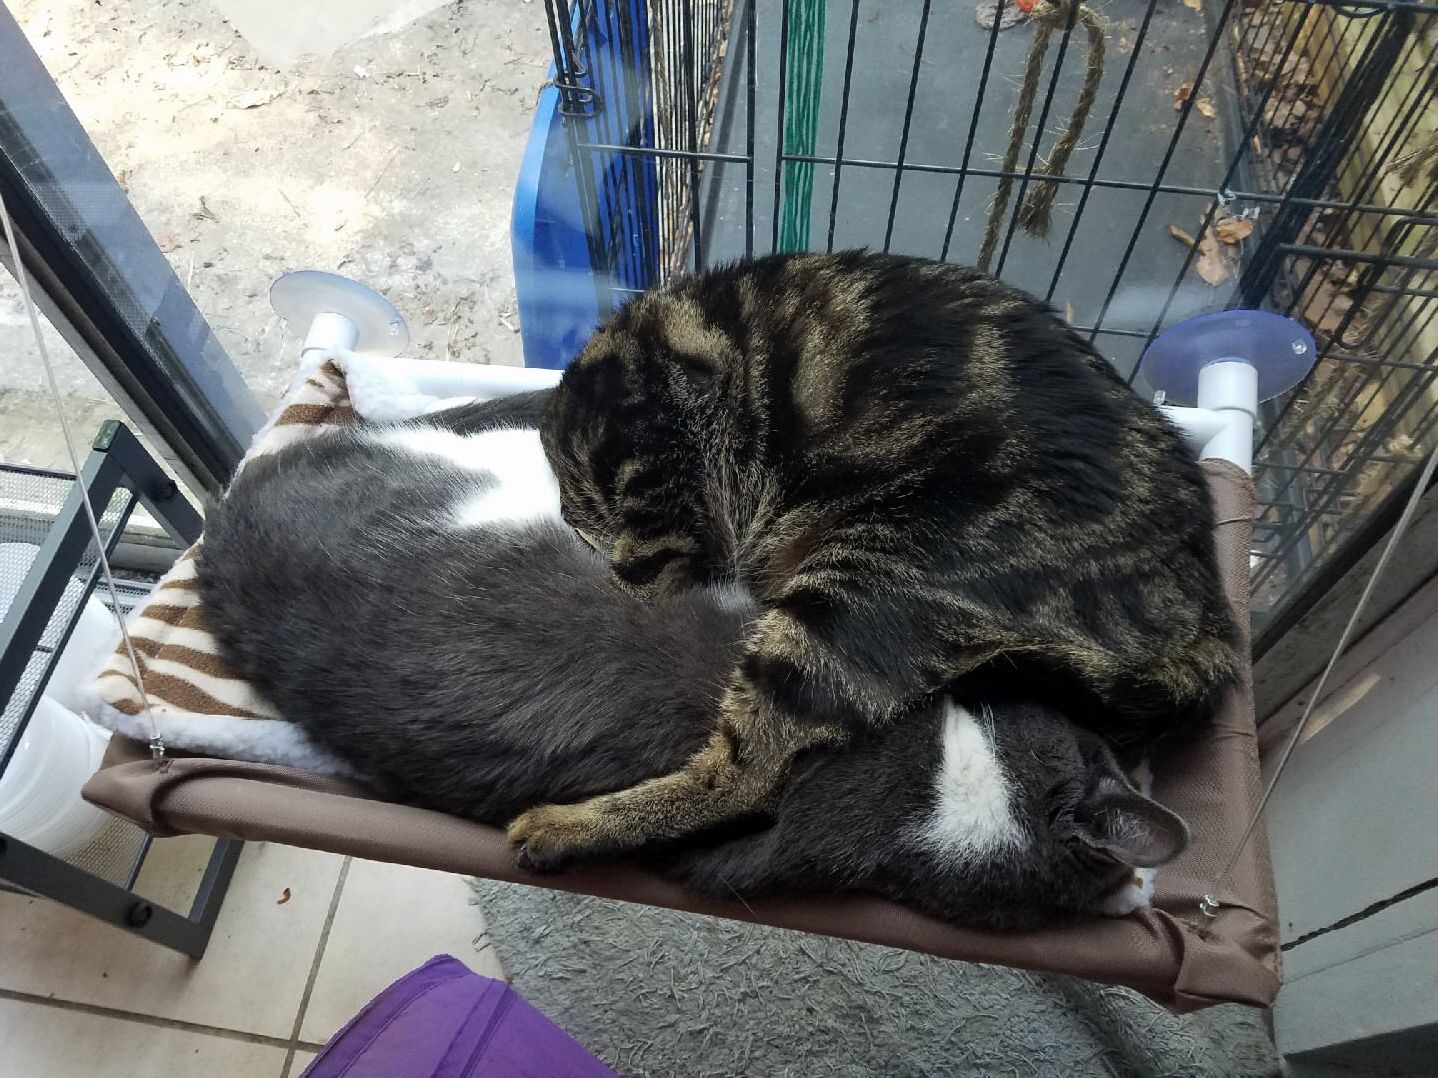 Our kitties cuddle in the weirdest ways